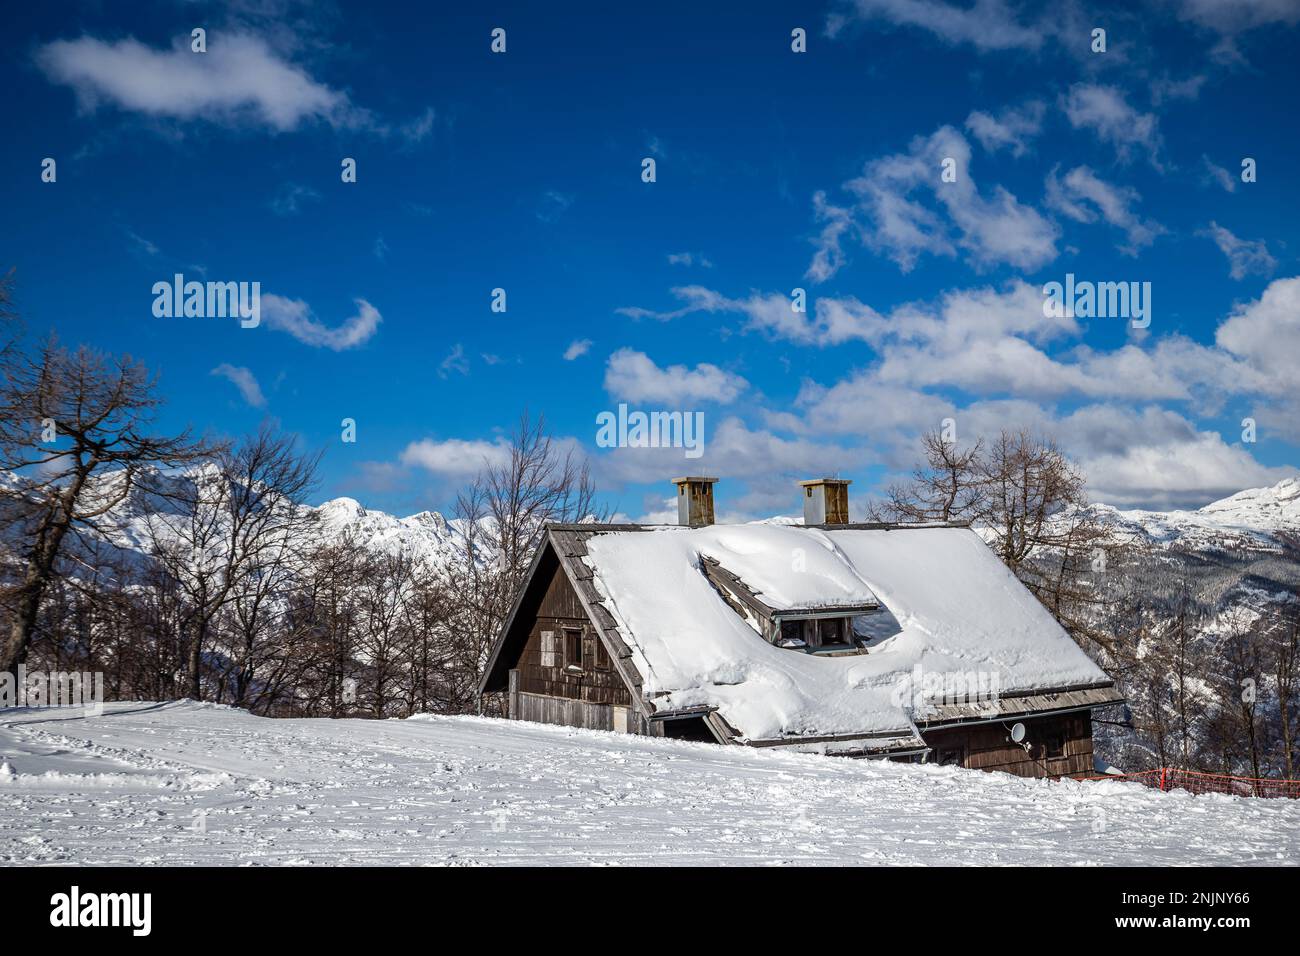 Bohinj, Slovénie - vue d'hiver de la cabane de ski enneigée au sommet de la montagne Vogel dans les Alpes au parc national Triglav lors d'une belle journée d'hiver avec du bleu Banque D'Images